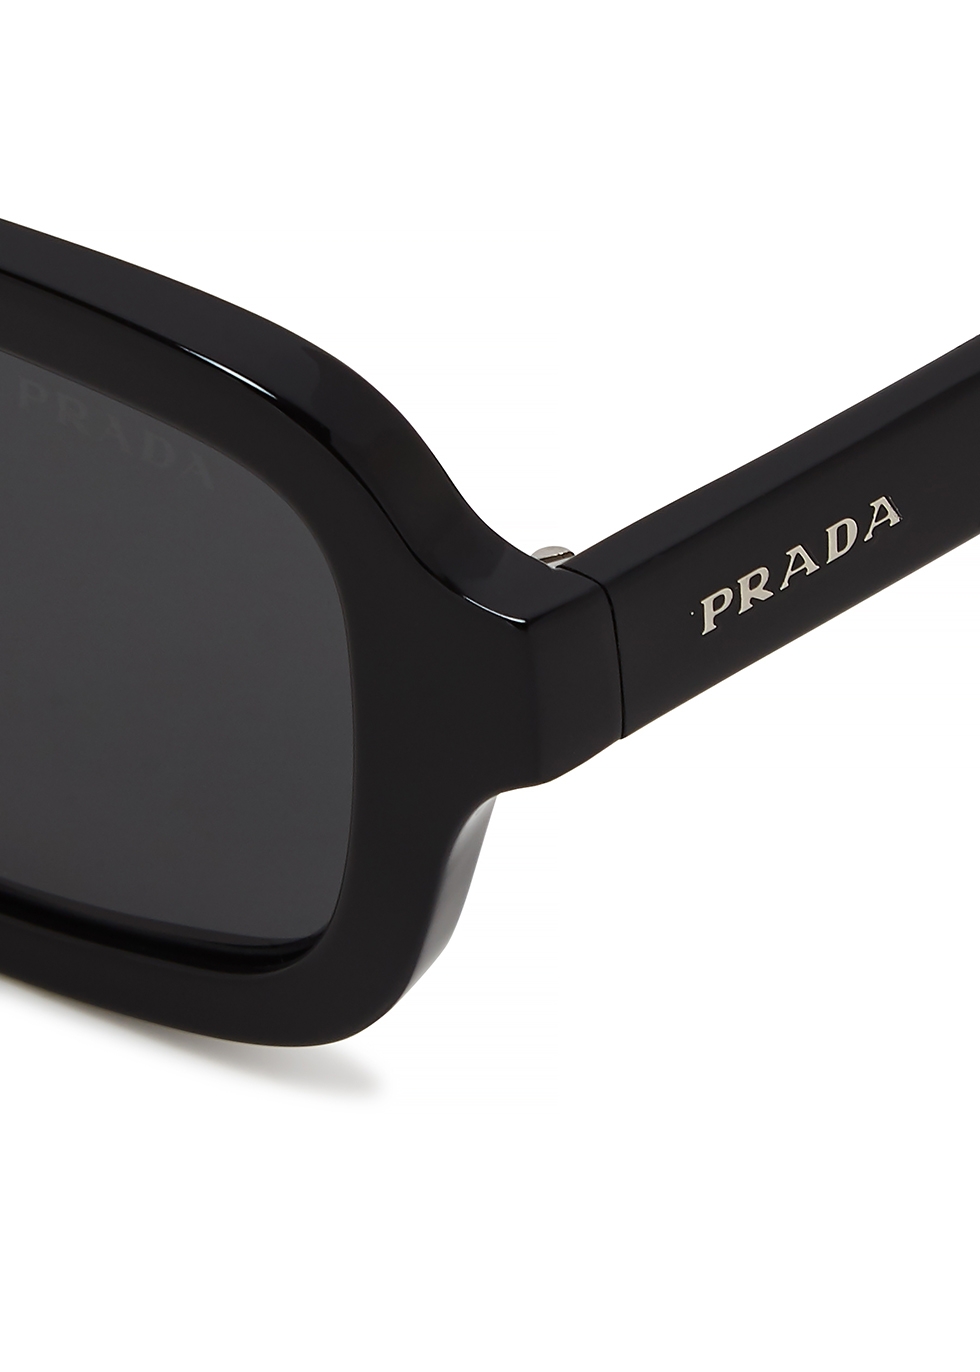 ثوران prada square sunglasses 